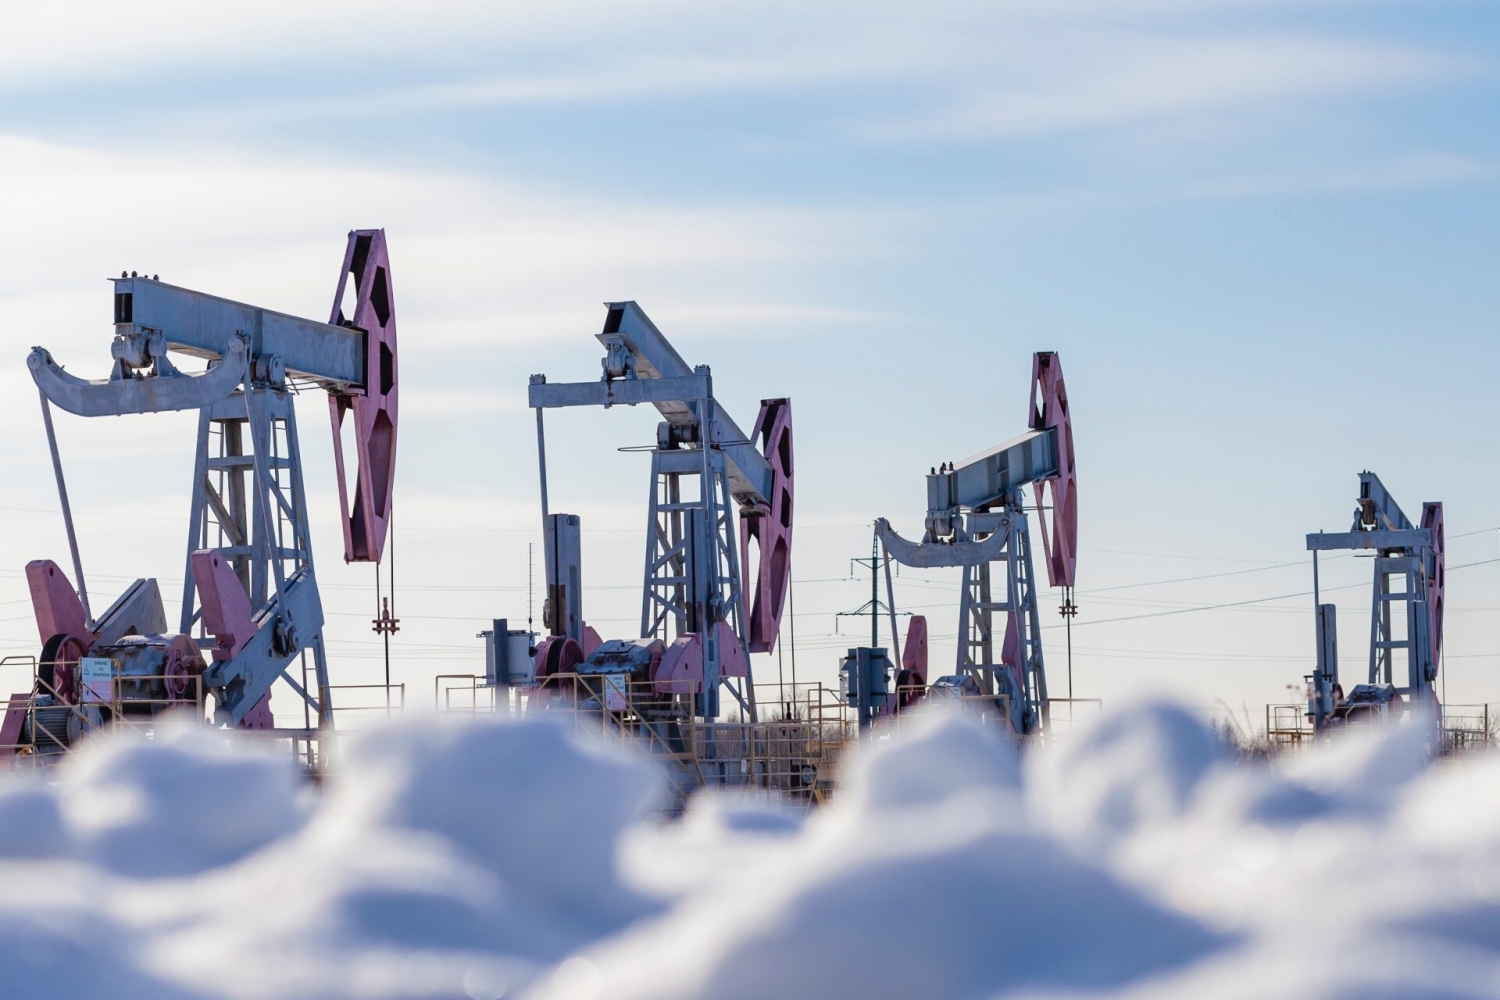 IMF: Giới hạn giá dầu sẽ không làm giảm doanh thu của Nga